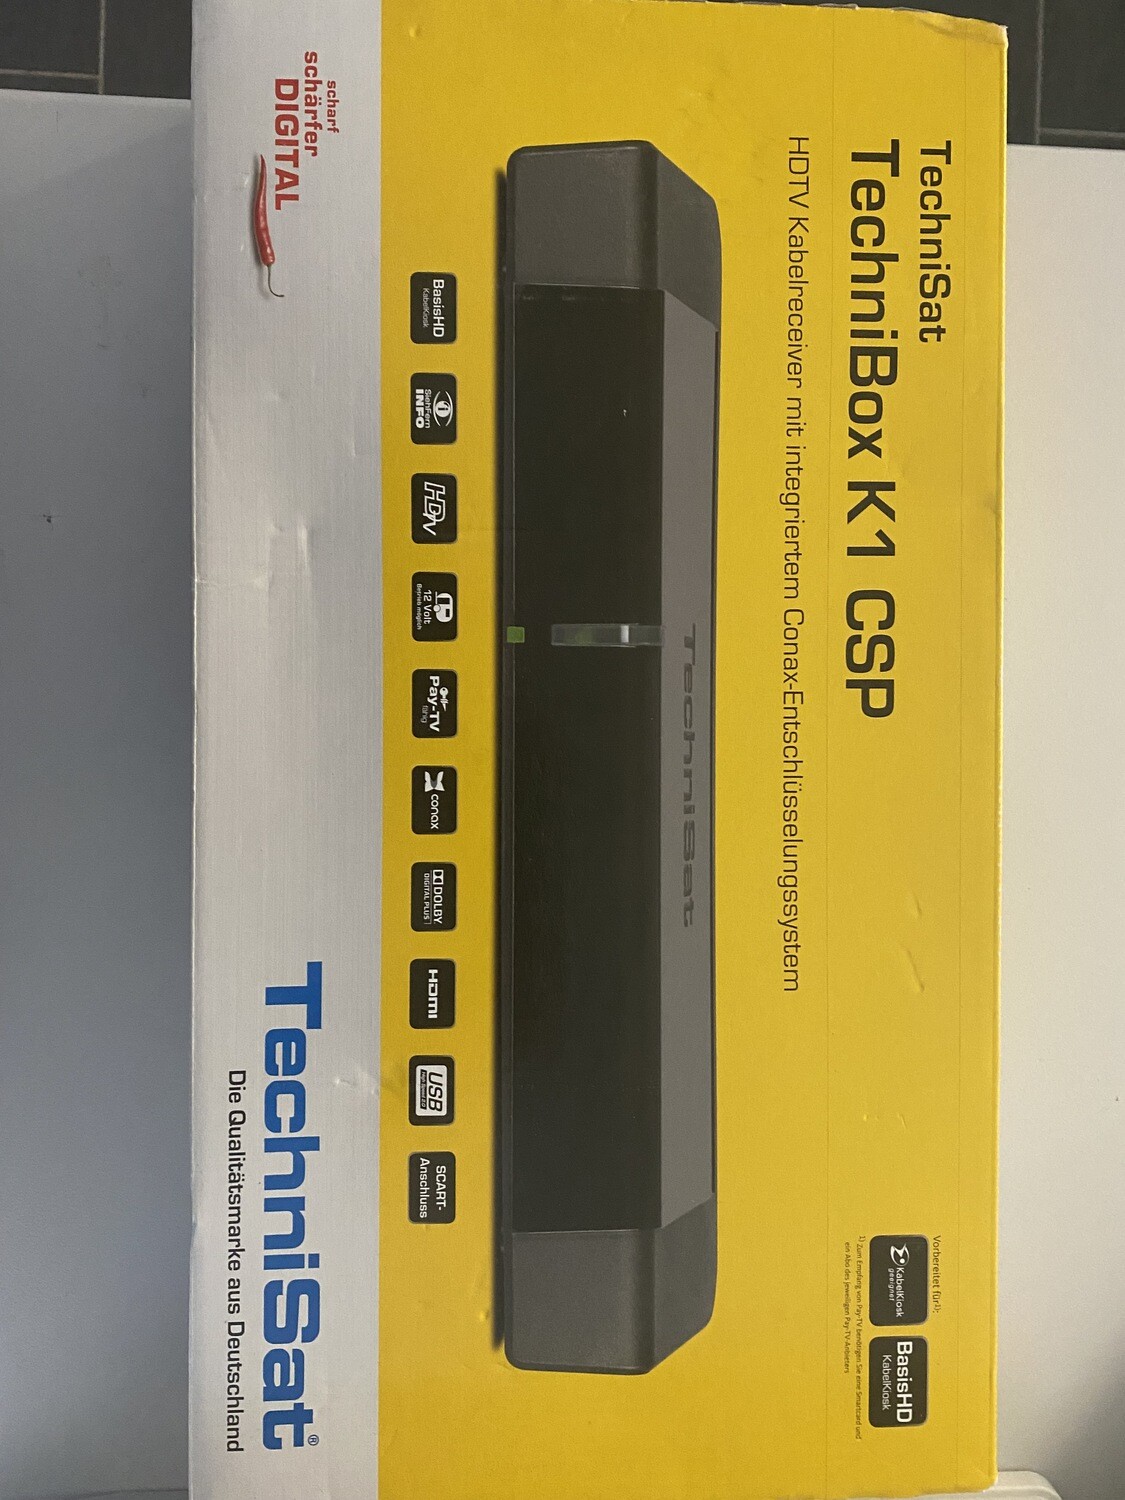 TECHNIBOX K1 CSP
HDTV-Kabelreceiver mit integriertem Conax-Entschlüsselungssystem